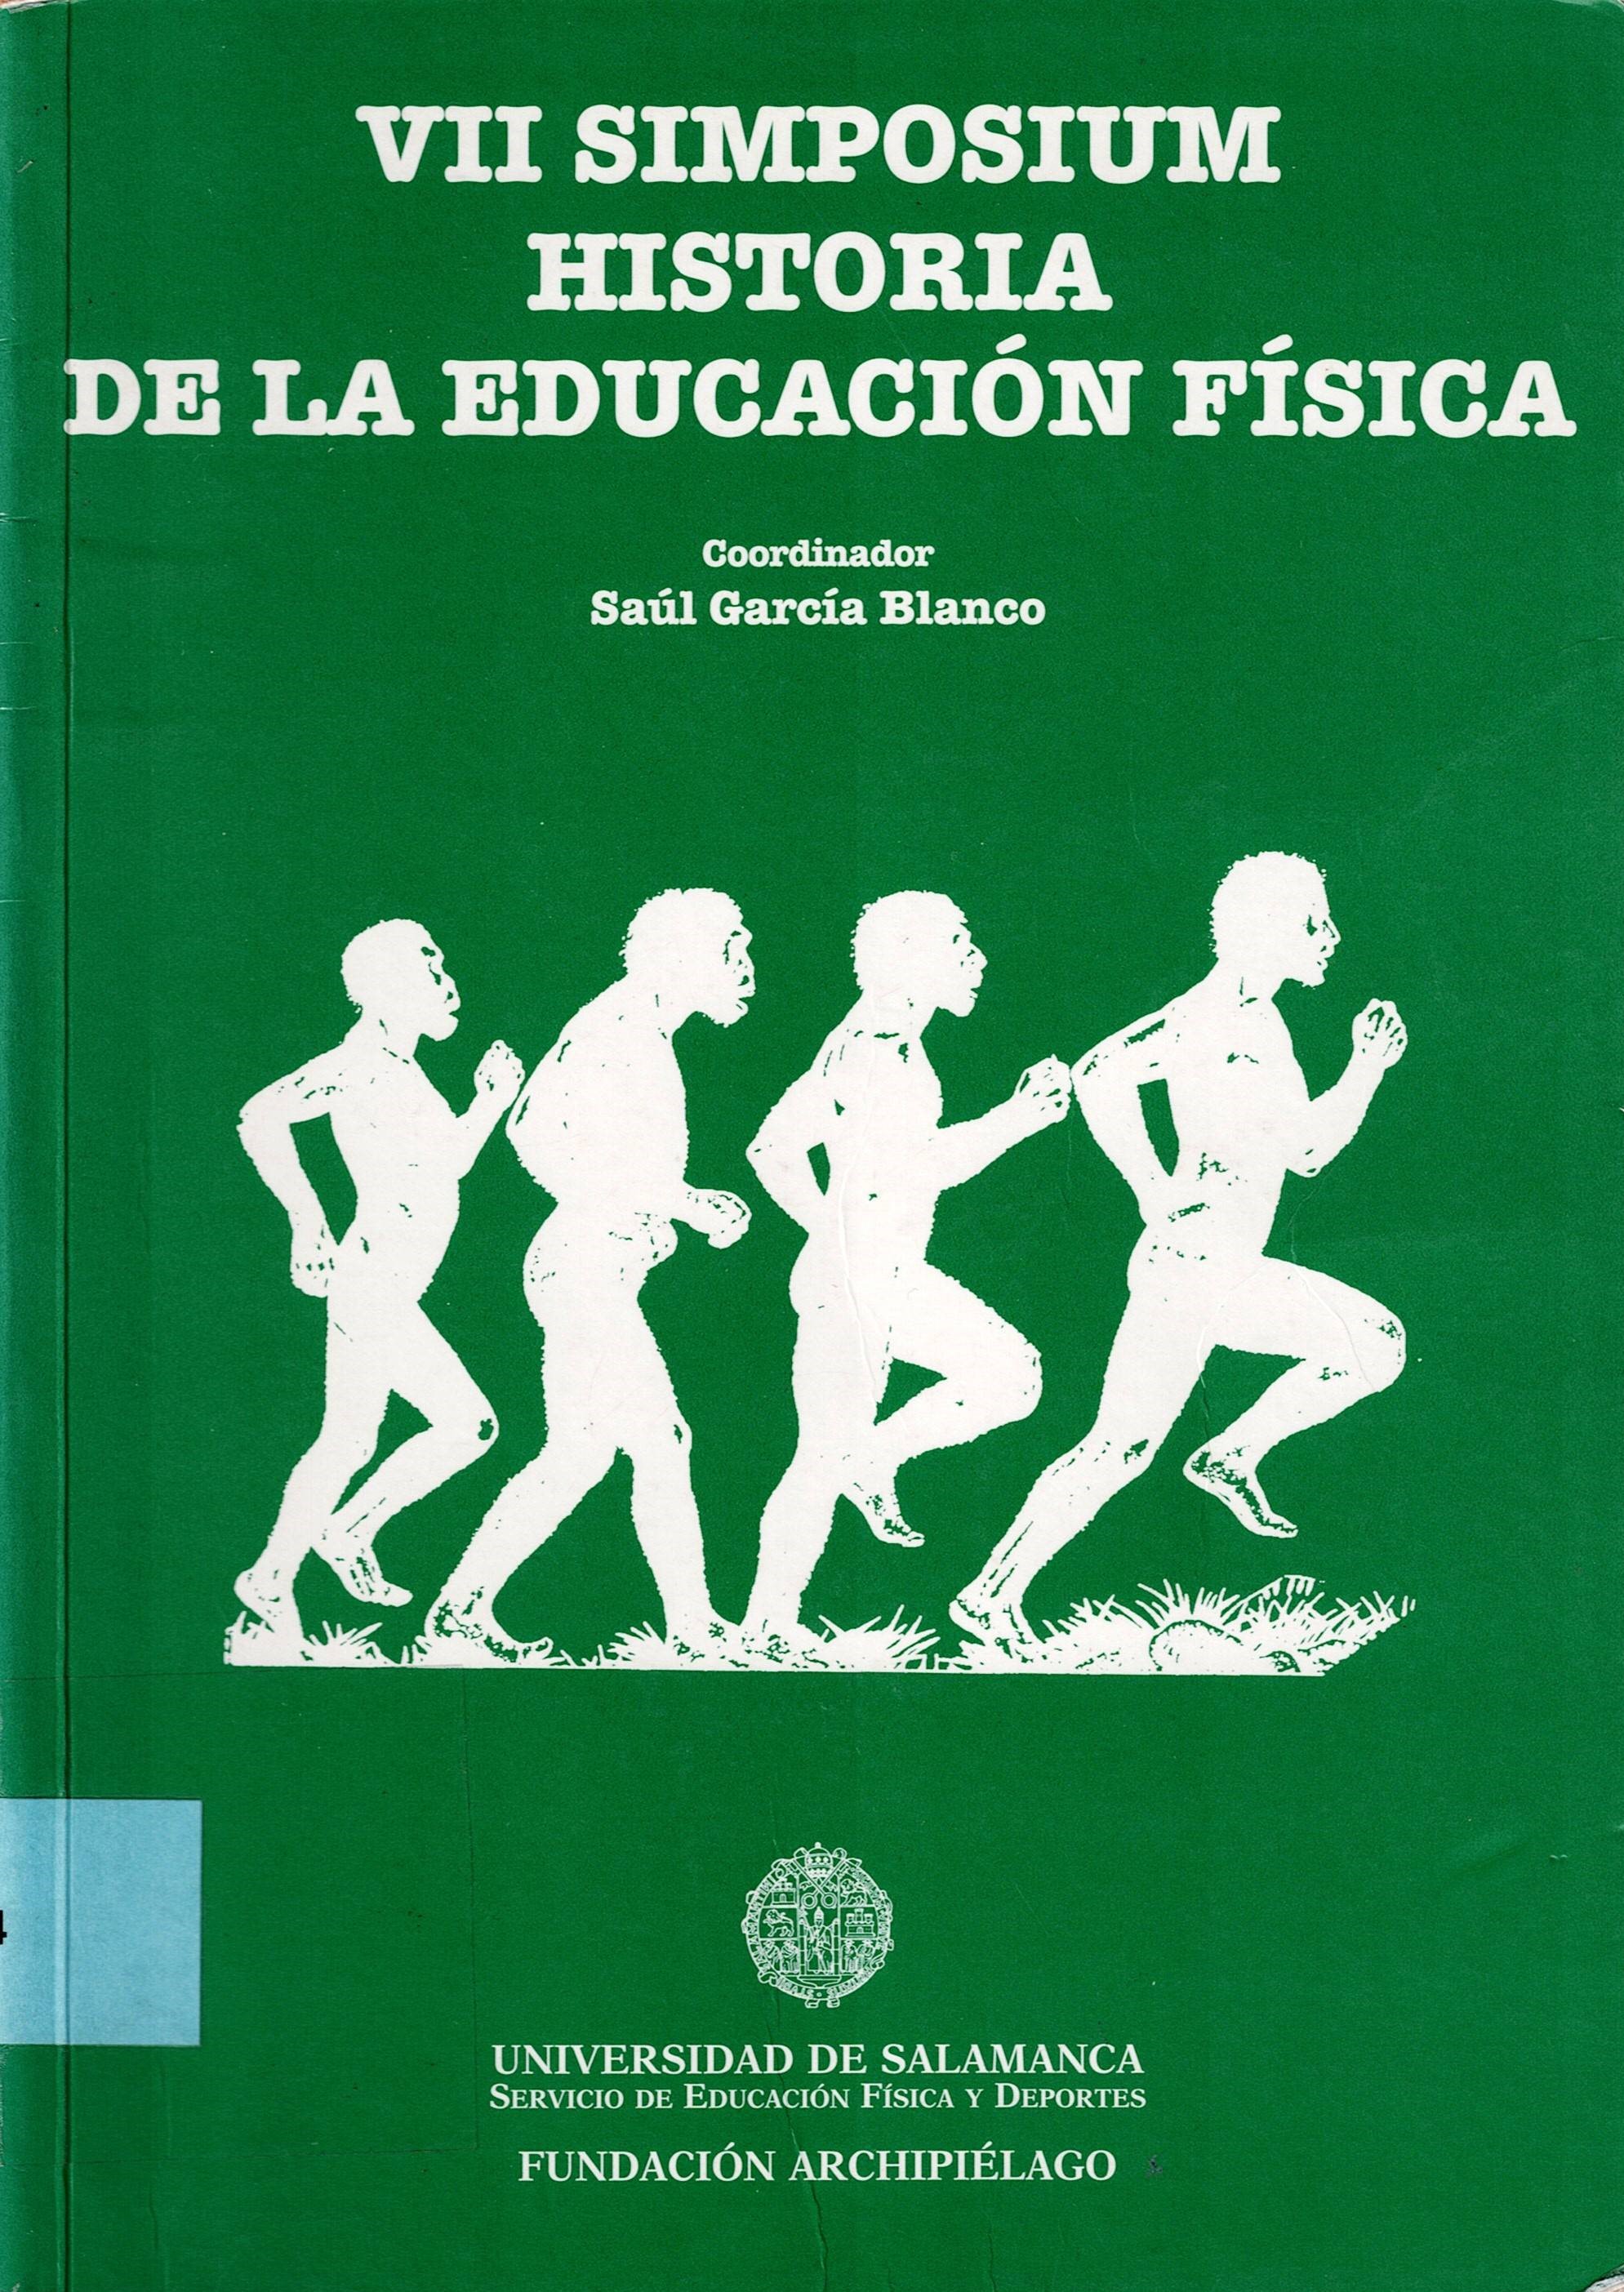 Imagen de portada del libro VII Simposium Historia de la Educación Física